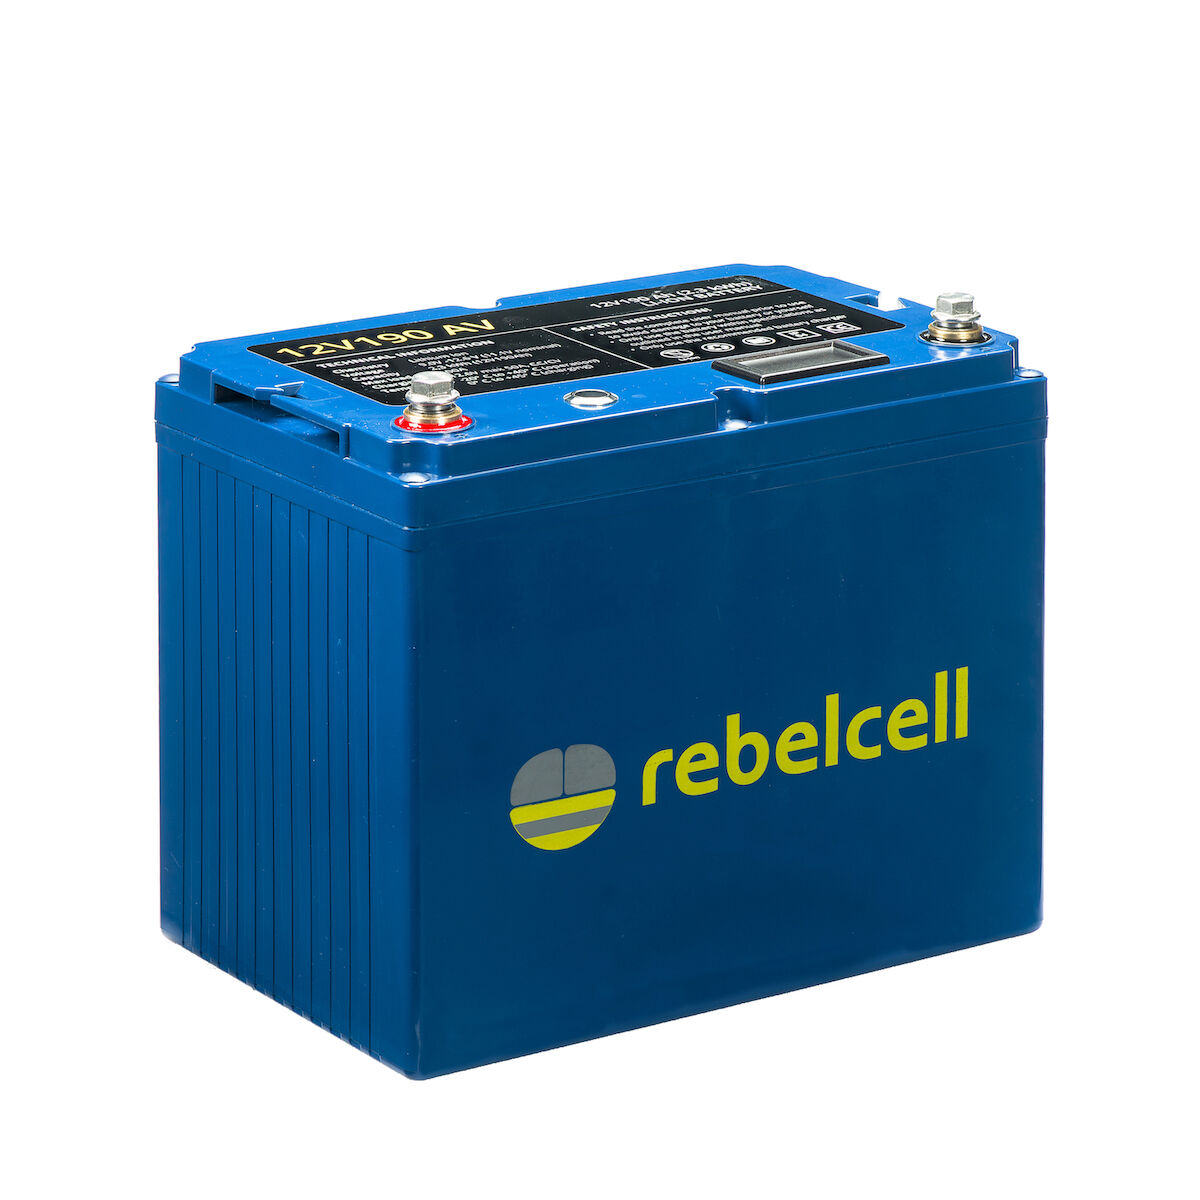 RebelCell 12V190 AV Lithium Batterie (12V 190Ah) 2,30kWh